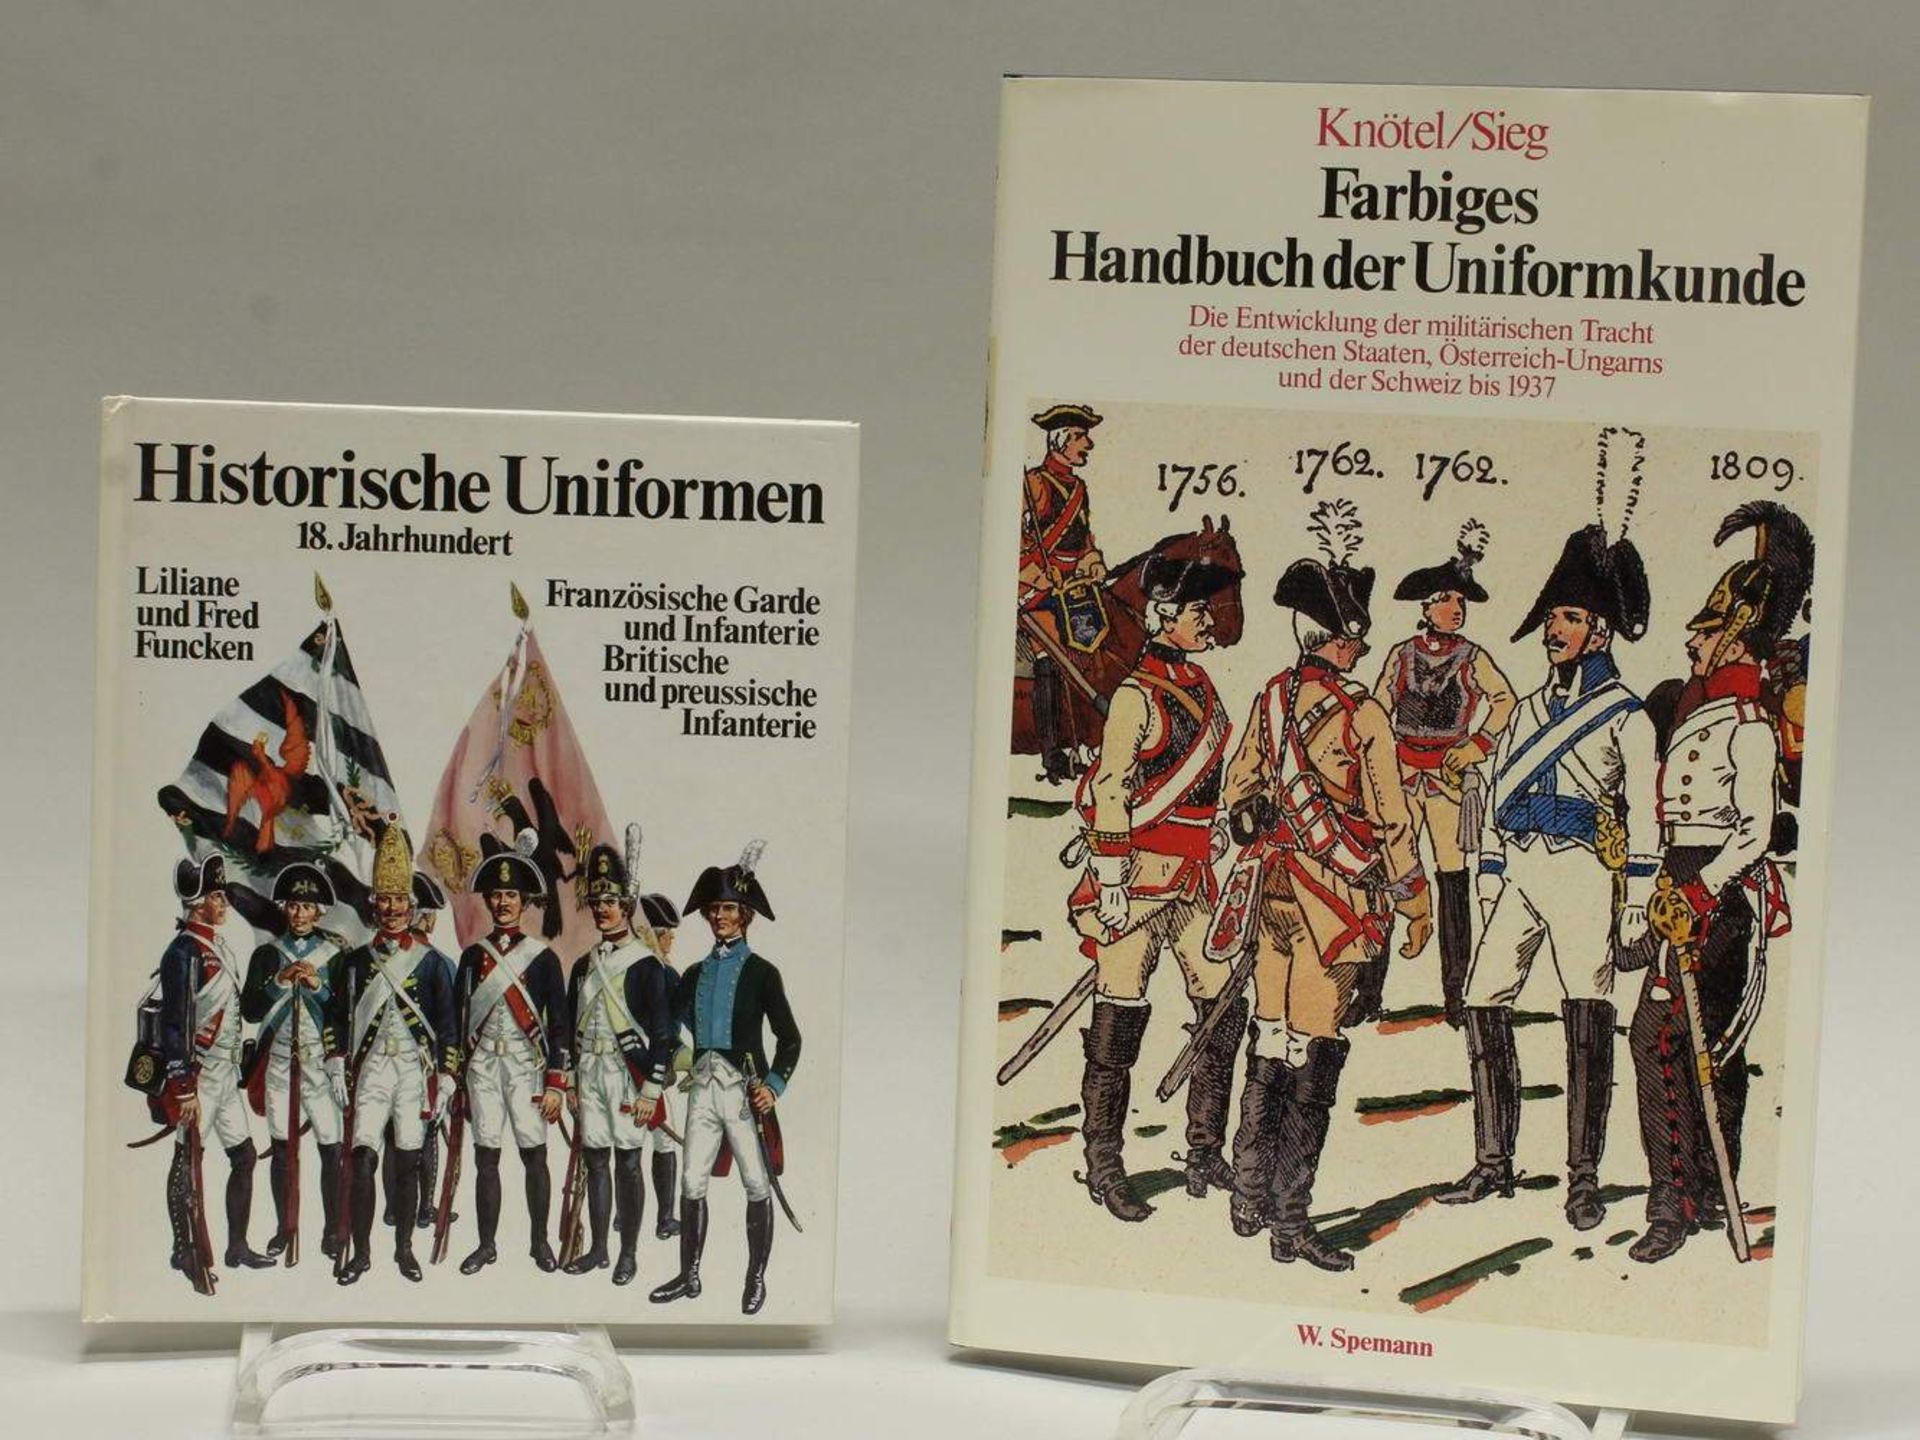 Liliane und Fred Funcken, "Historische Uniformen 18. Jahrhundert", München, 1978, kart. Einband;